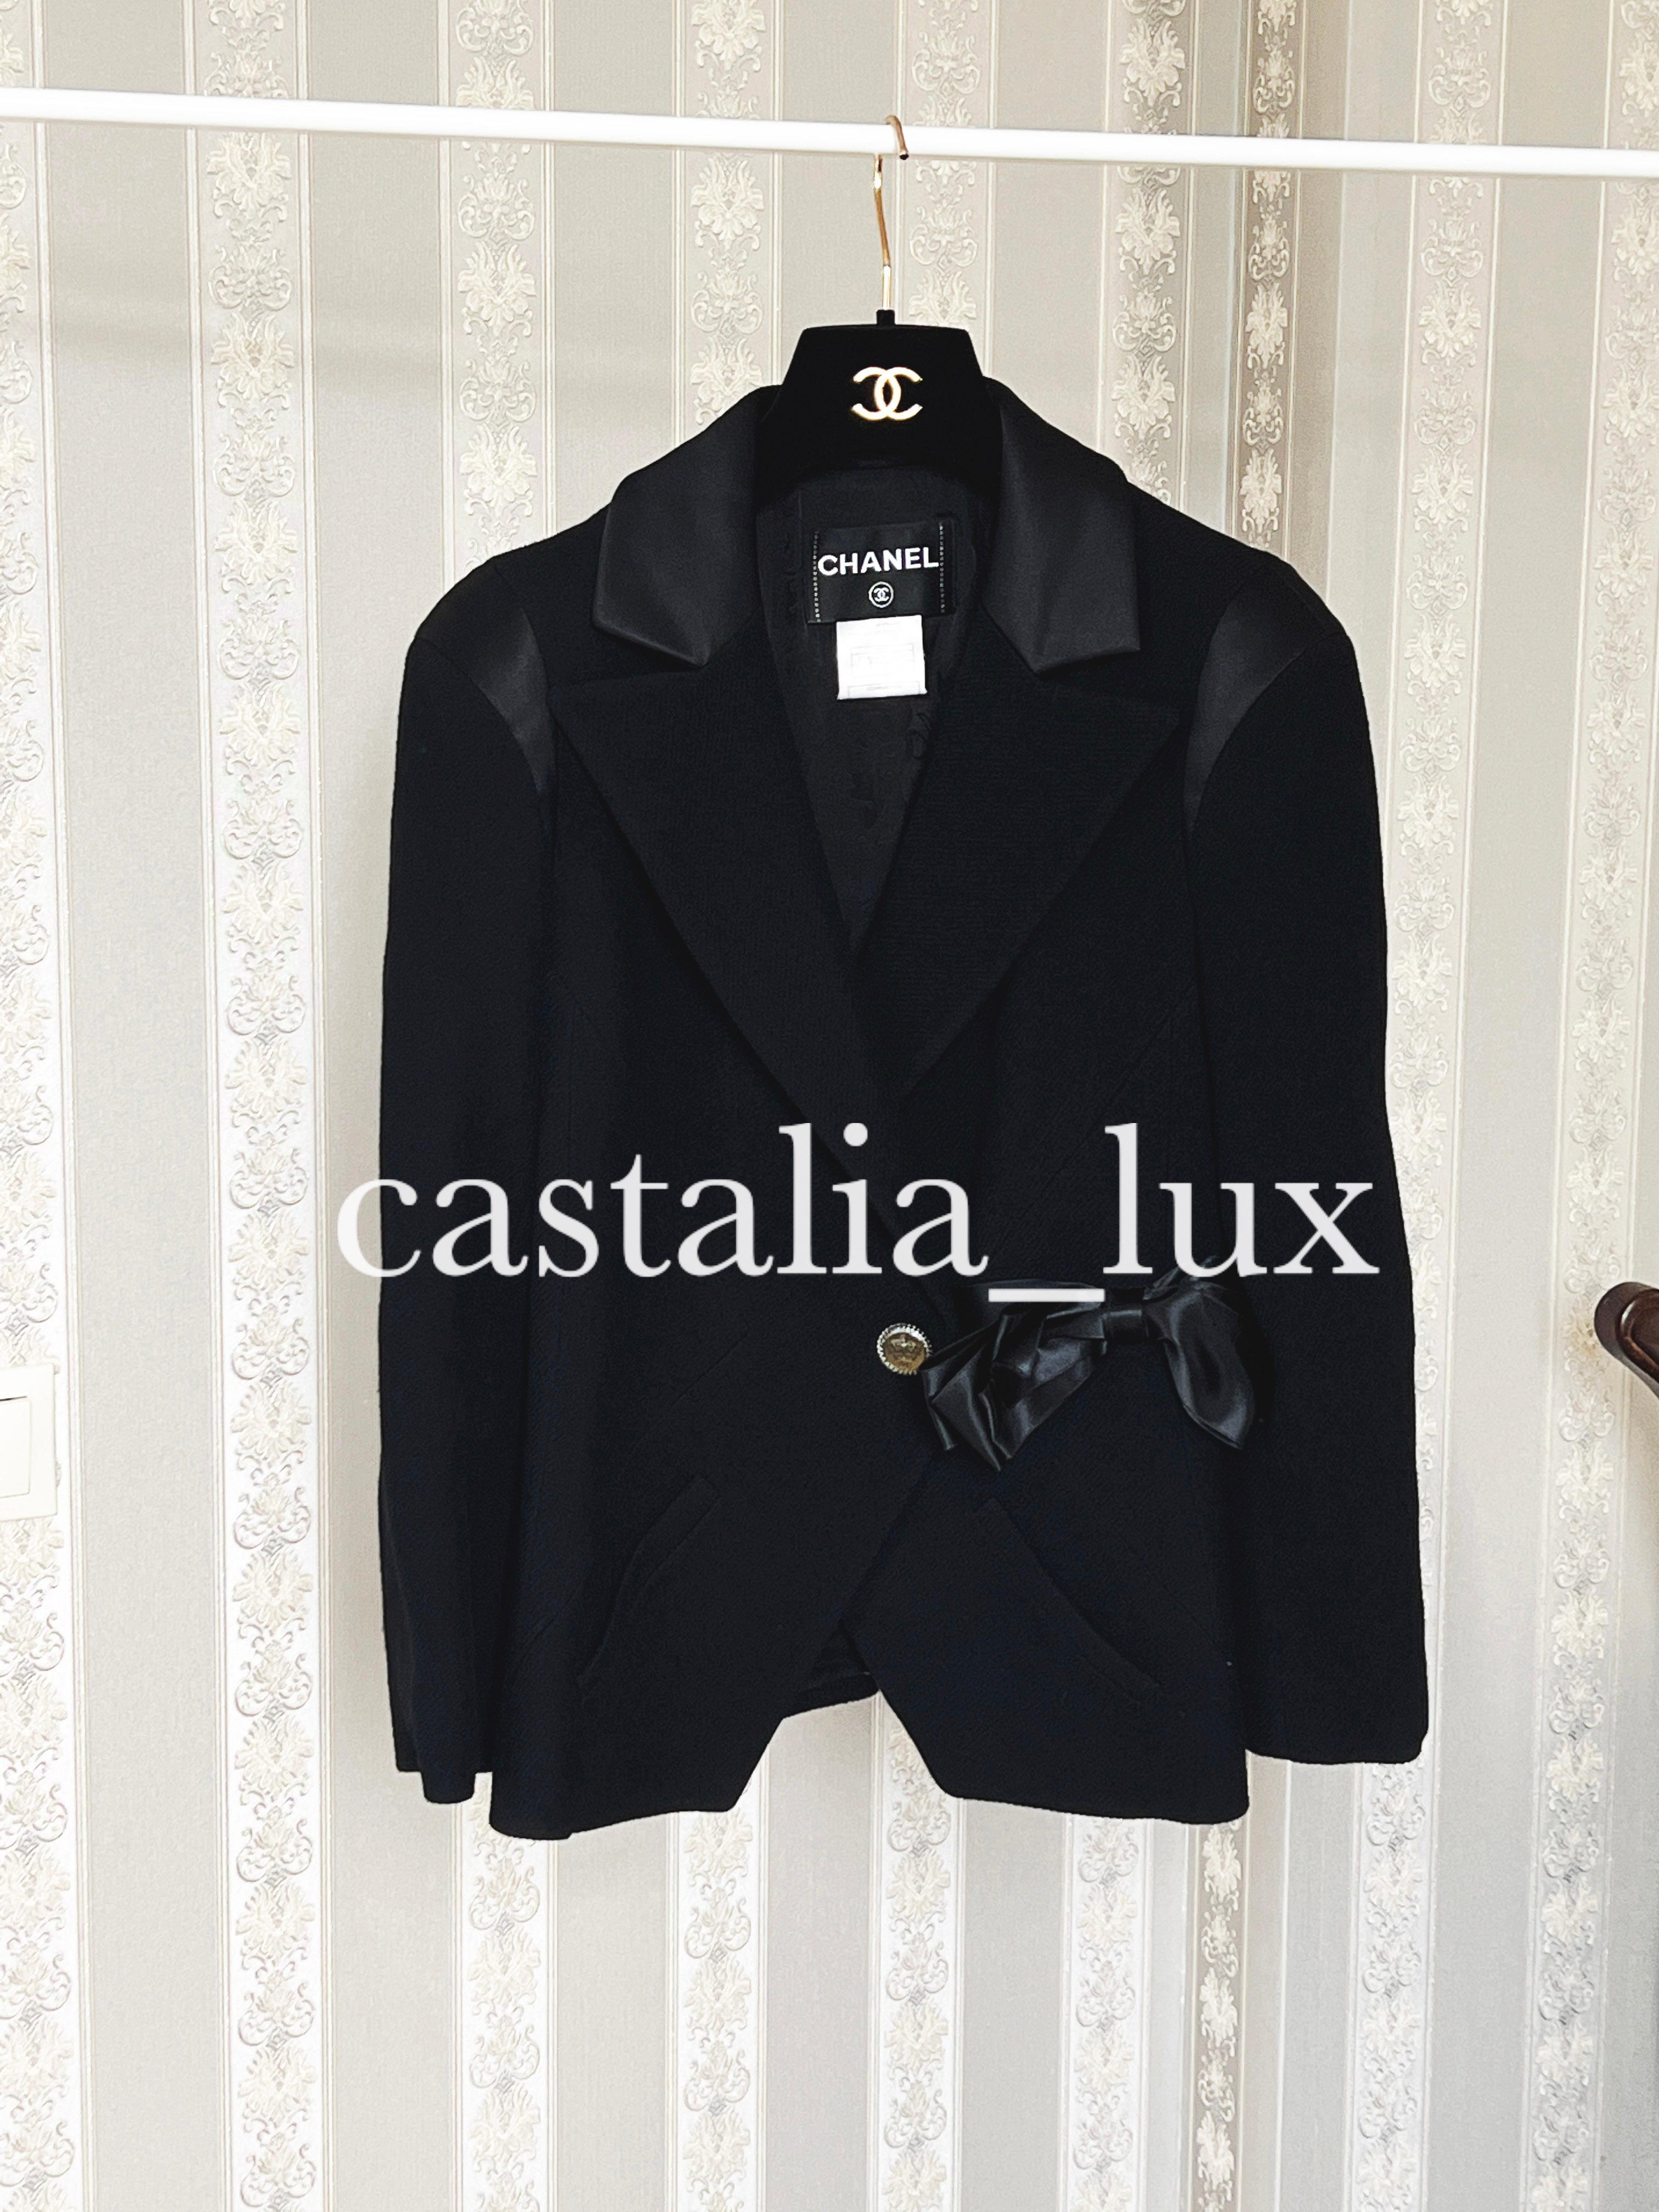 Chanel Paris / London Runway Black Tweed Jacket For Sale 2